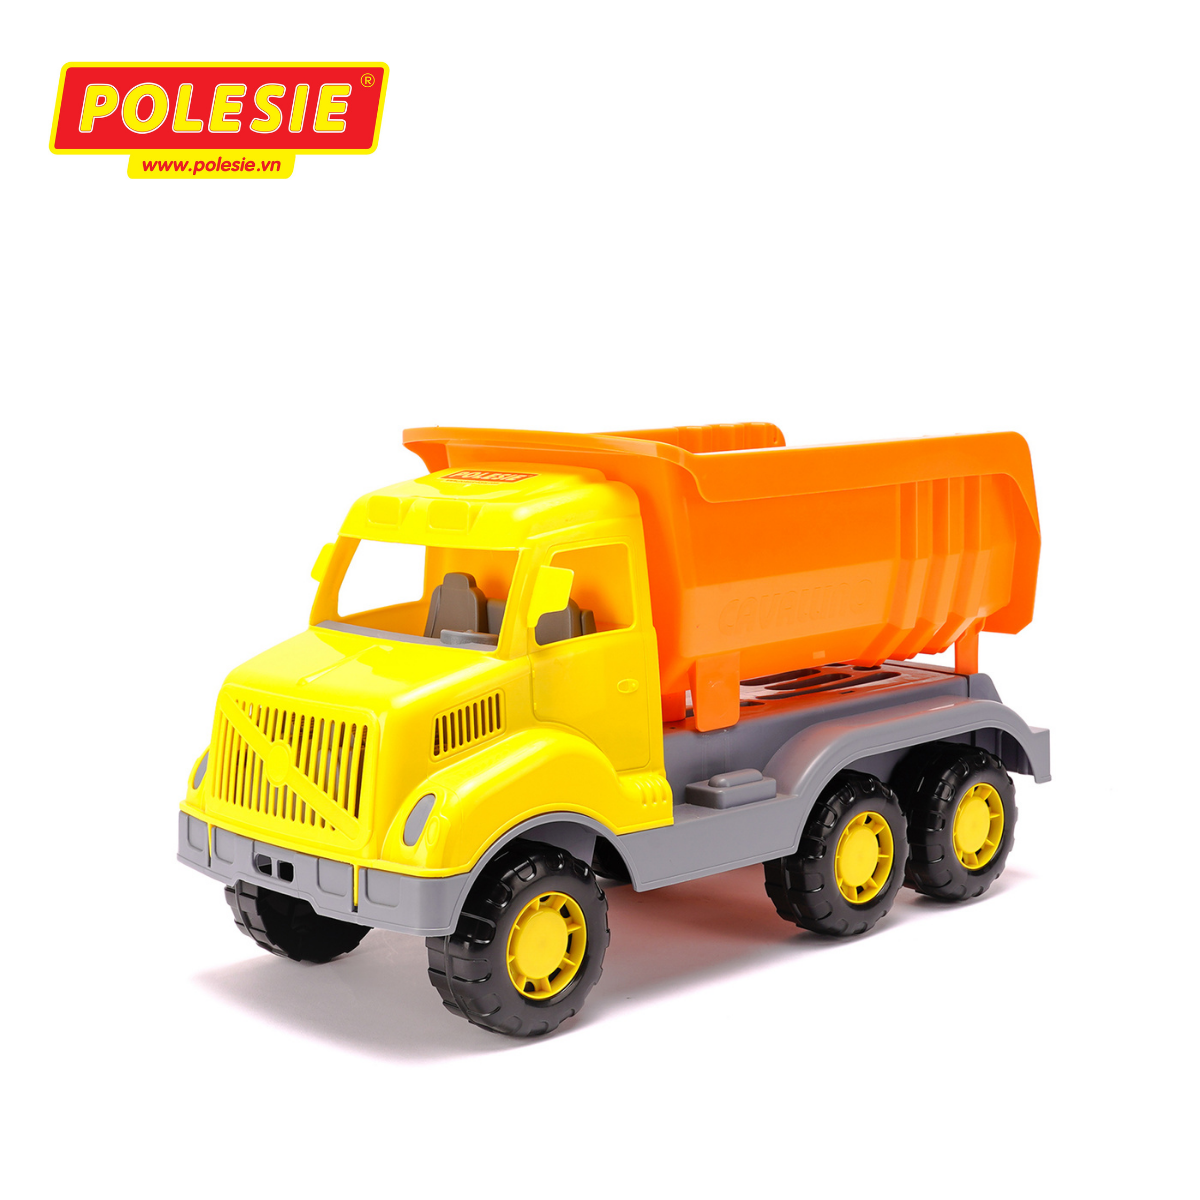 Xe tải chở hàng Polesie 37336 - Hàng chính hãng nhập khẩu châu âu